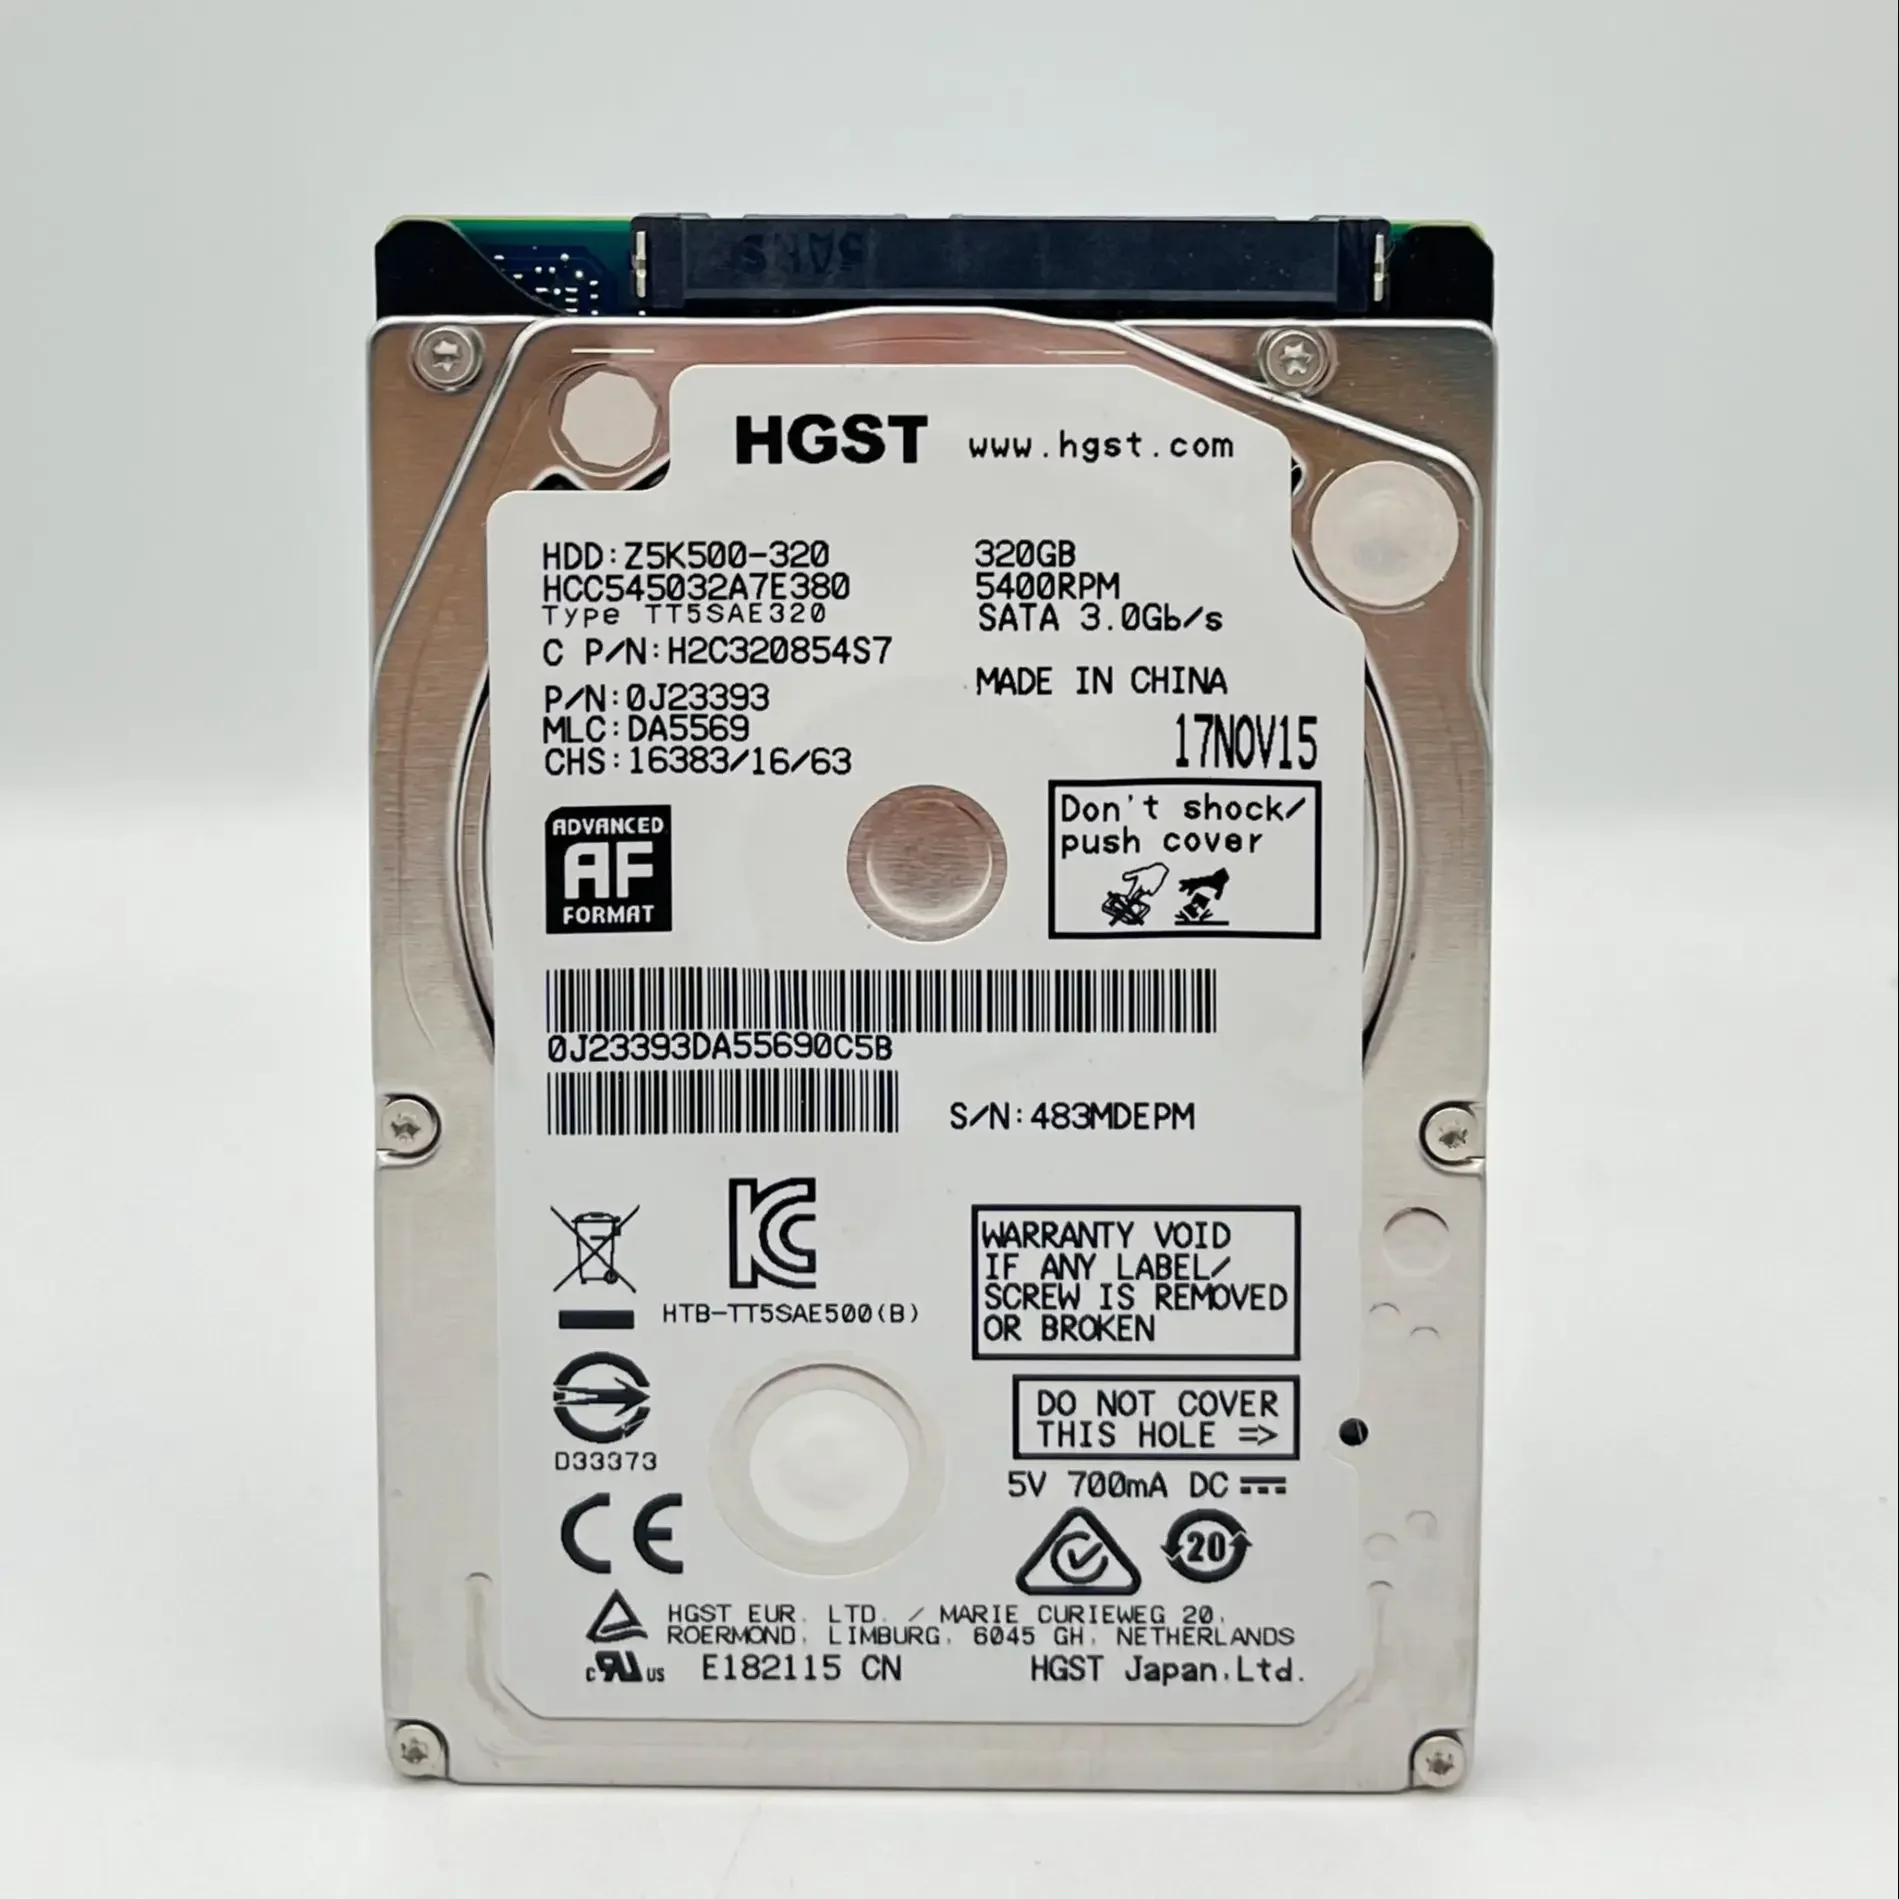  HGST 귣  Ƽ ϵ ũ, Ʈ  ϵ ũ, HDD Z5K500-320, SATA 3.0 Gb/S, 5200RMP, 320GB